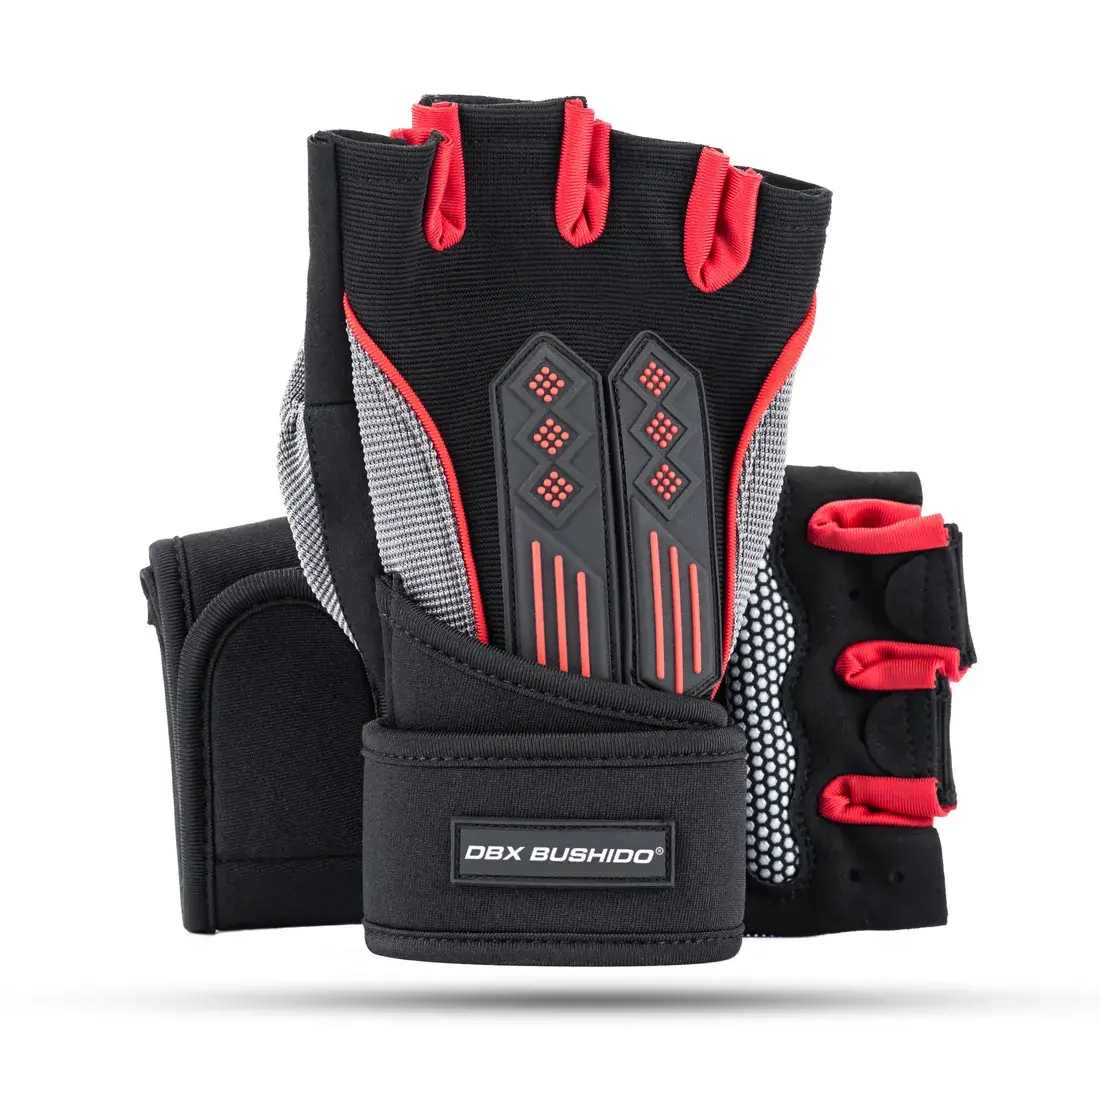 DBX Bushido gym gloves